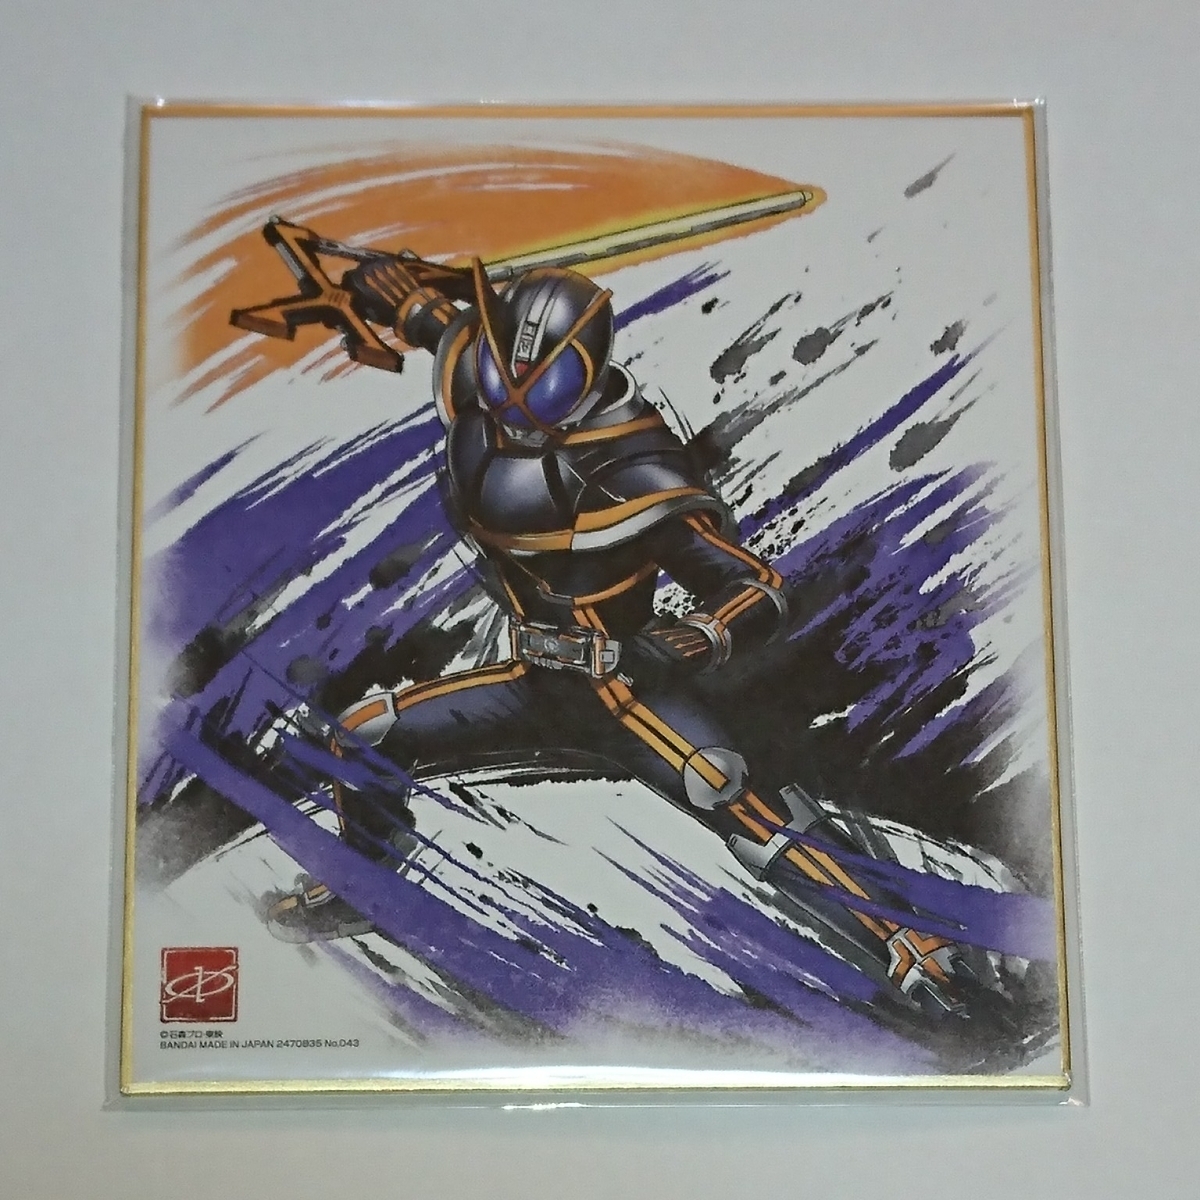  быстрое решение Kamen Rider kai The карточка для автографов, стихов, пожеланий ART3 не использовался товар Kamen Rider 555 913